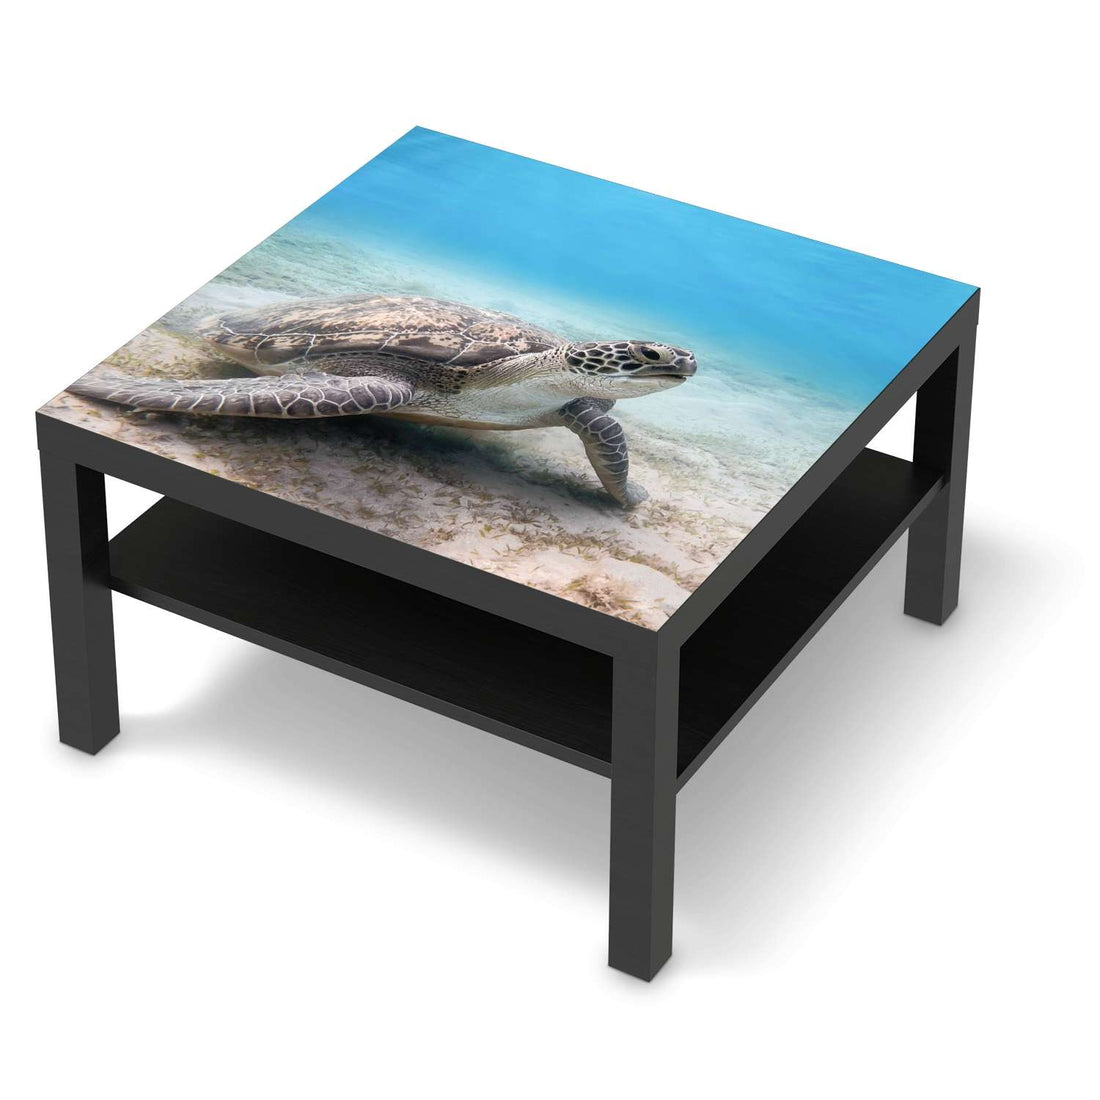 Selbstklebende Folie Green Sea Turtle - IKEA Lack Tisch 78x78 cm - schwarz